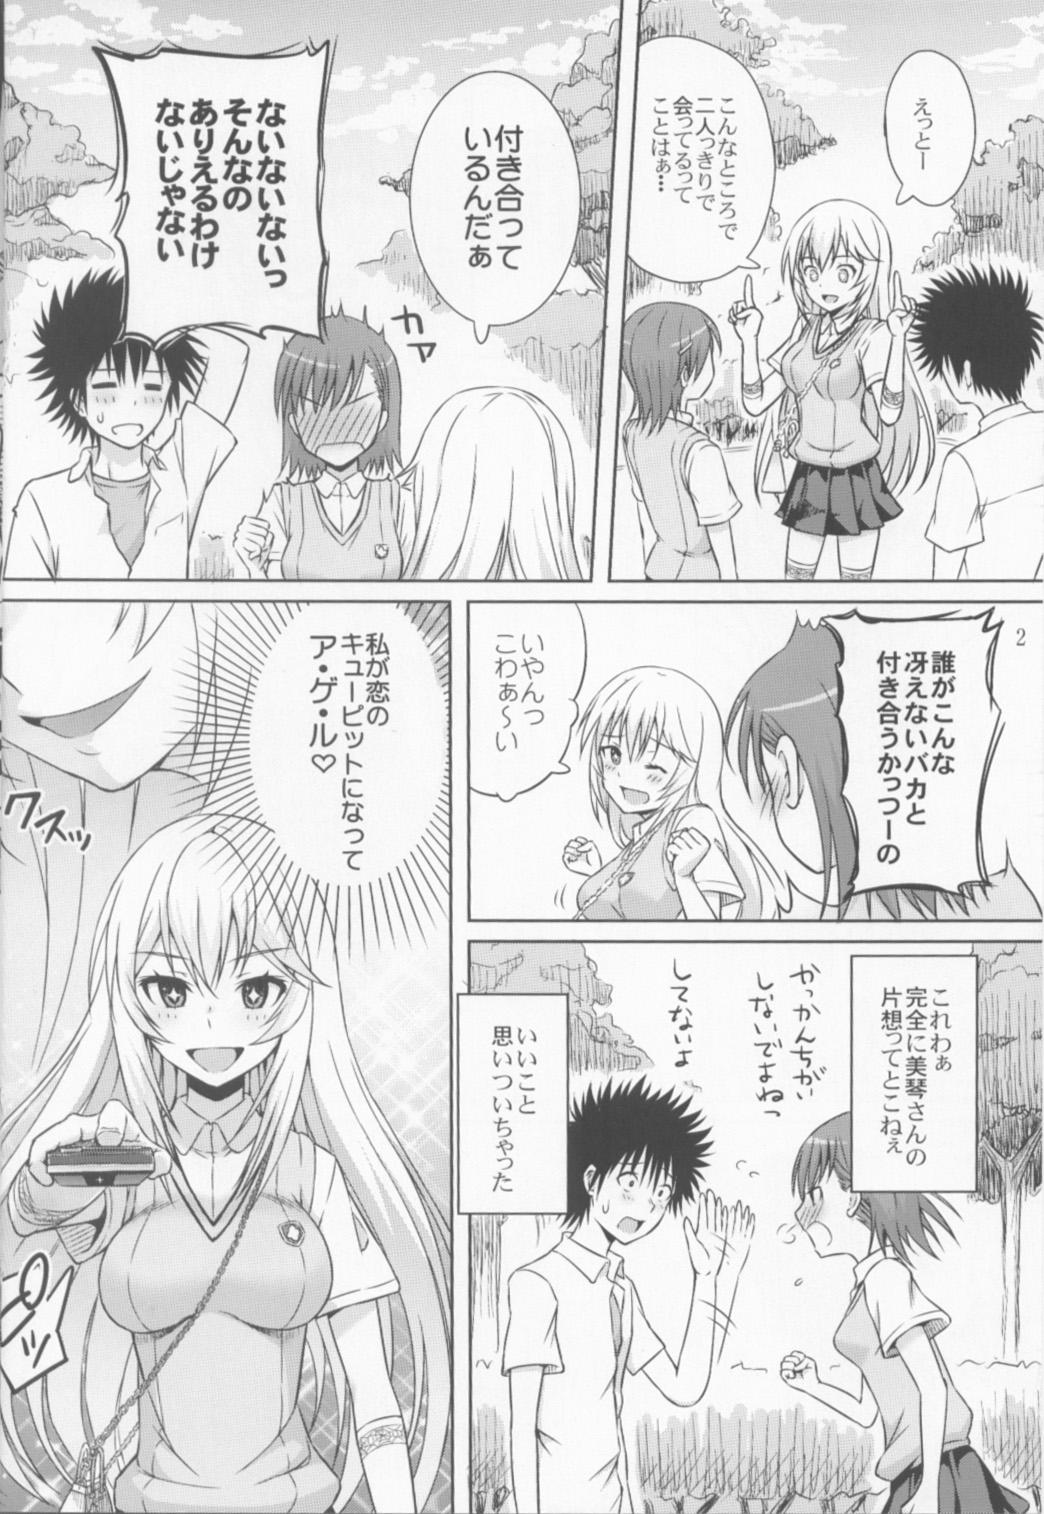 Tiny Tits Remocon ga Nai. - Toaru kagaku no railgun Shesafreak - Page 3